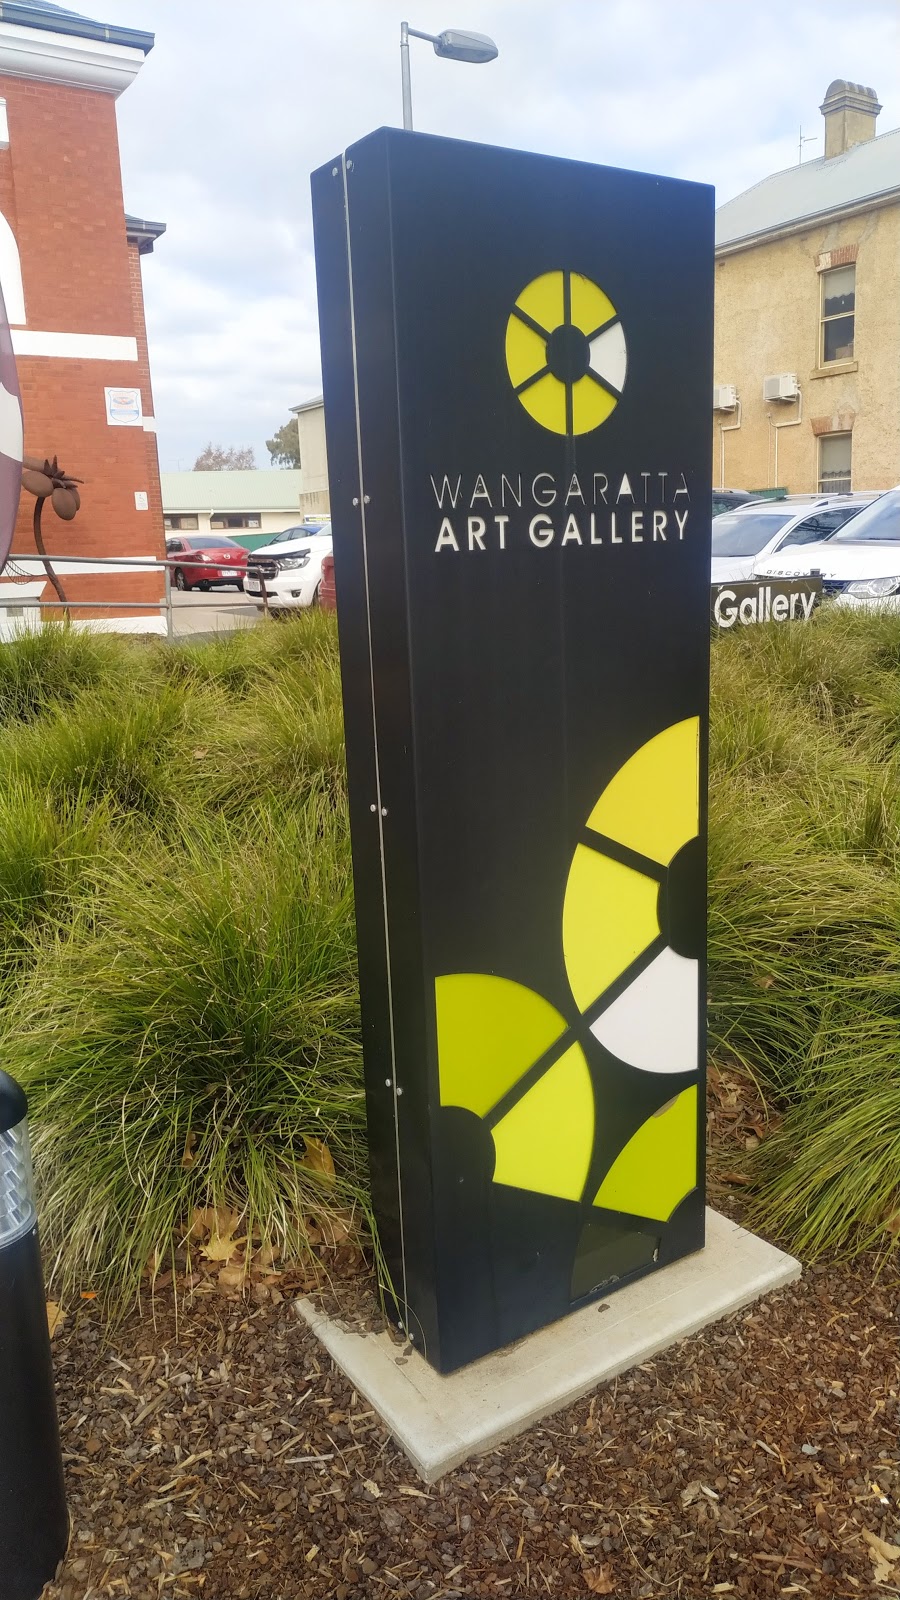 Wangaratta Art Gallery | art gallery | 56 Ovens St, Wangaratta VIC 3677, Australia | 0357220865 OR +61 3 5722 0865